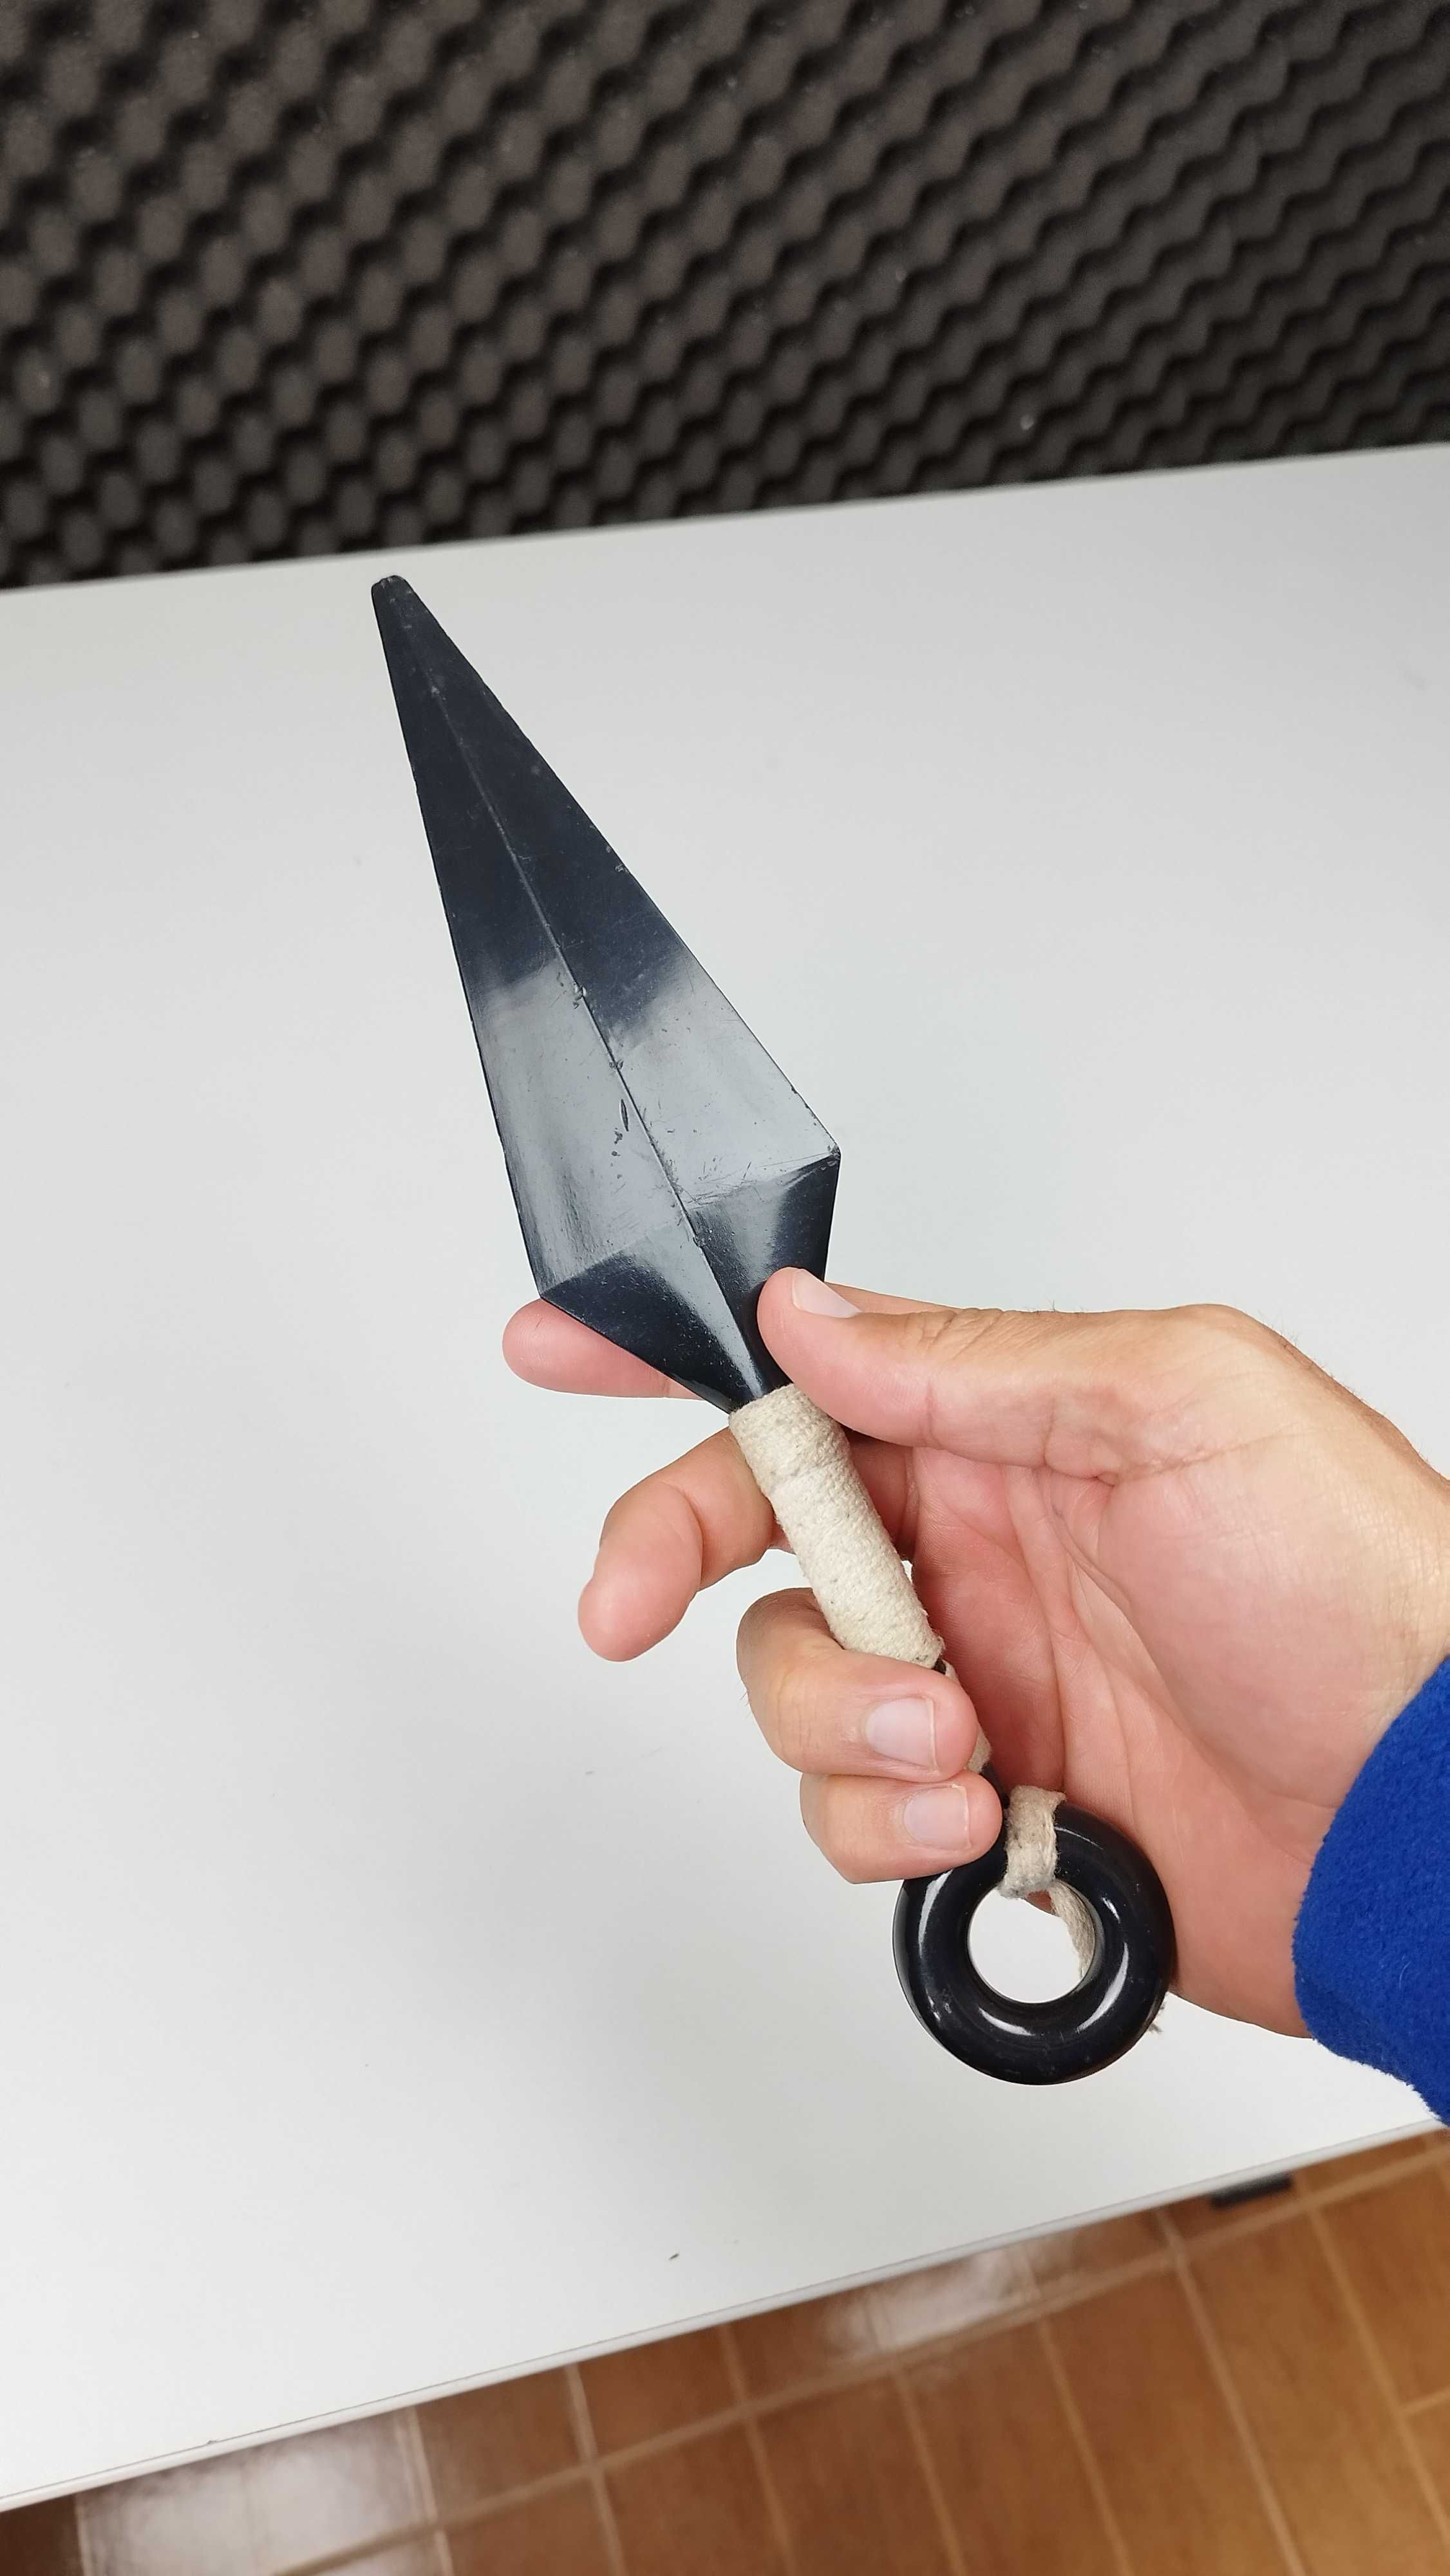 Naruto Kunai Knife Adereço plástico cosplay